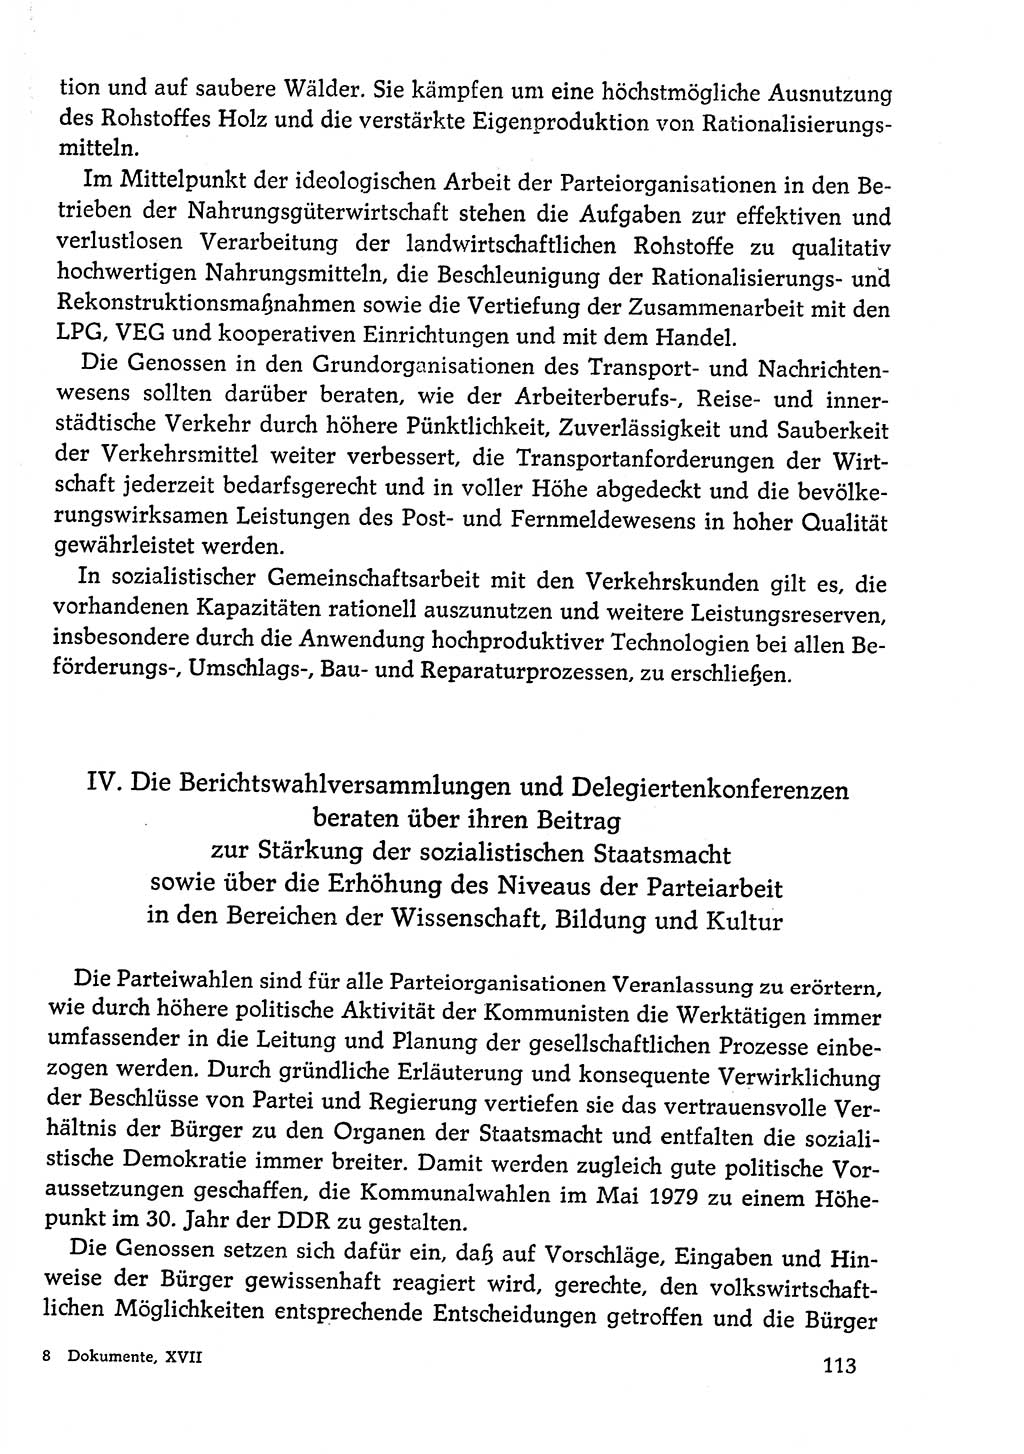 Dokumente der Sozialistischen Einheitspartei Deutschlands (SED) [Deutsche Demokratische Republik (DDR)] 1978-1979, Seite 113 (Dok. SED DDR 1978-1979, S. 113)